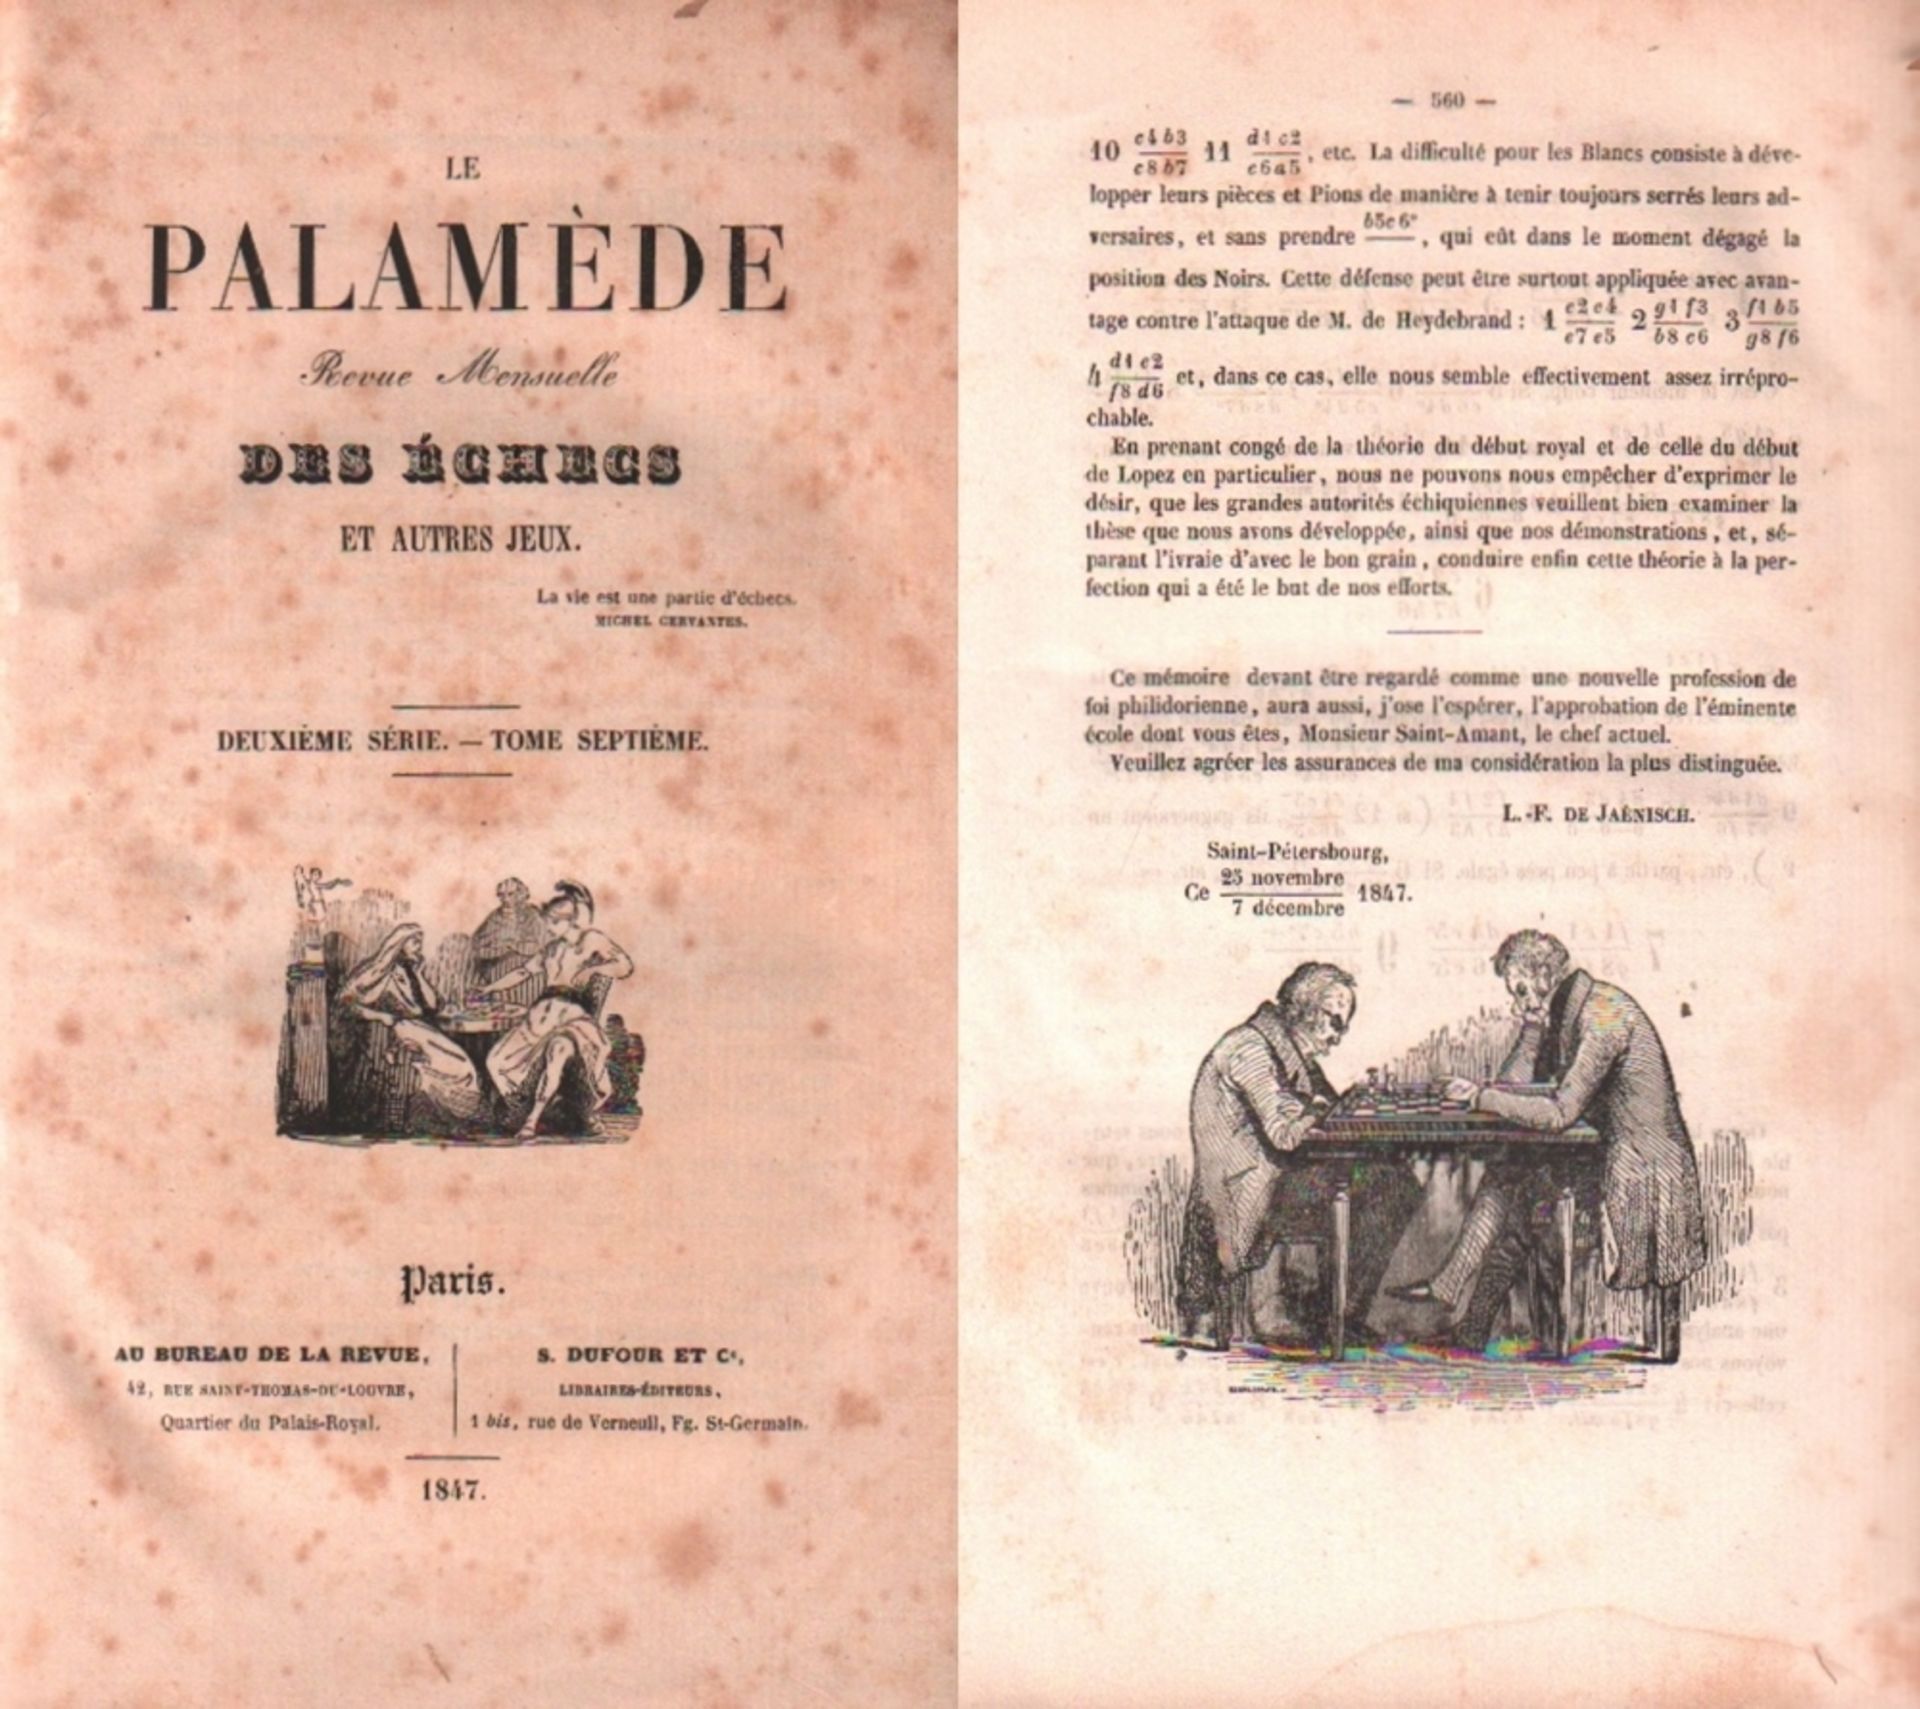 Le Palamède. Revue Mensuelle des Echecs et autres Jeux. Deuxième Série. Tome Septième. Paris, Bureau